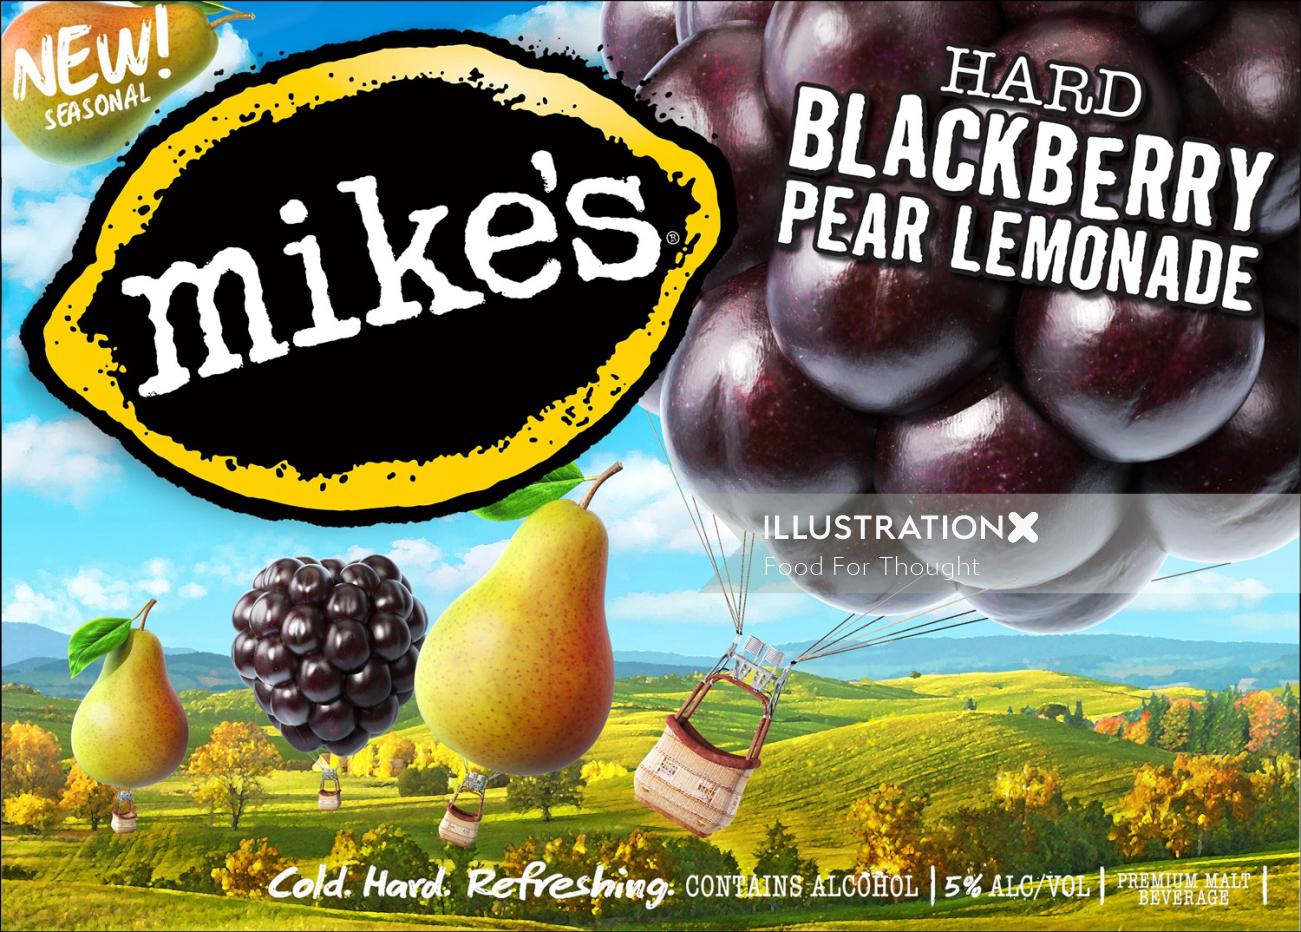 Advertising illustration of Mike's Hard Blackberry Pear Lemonade